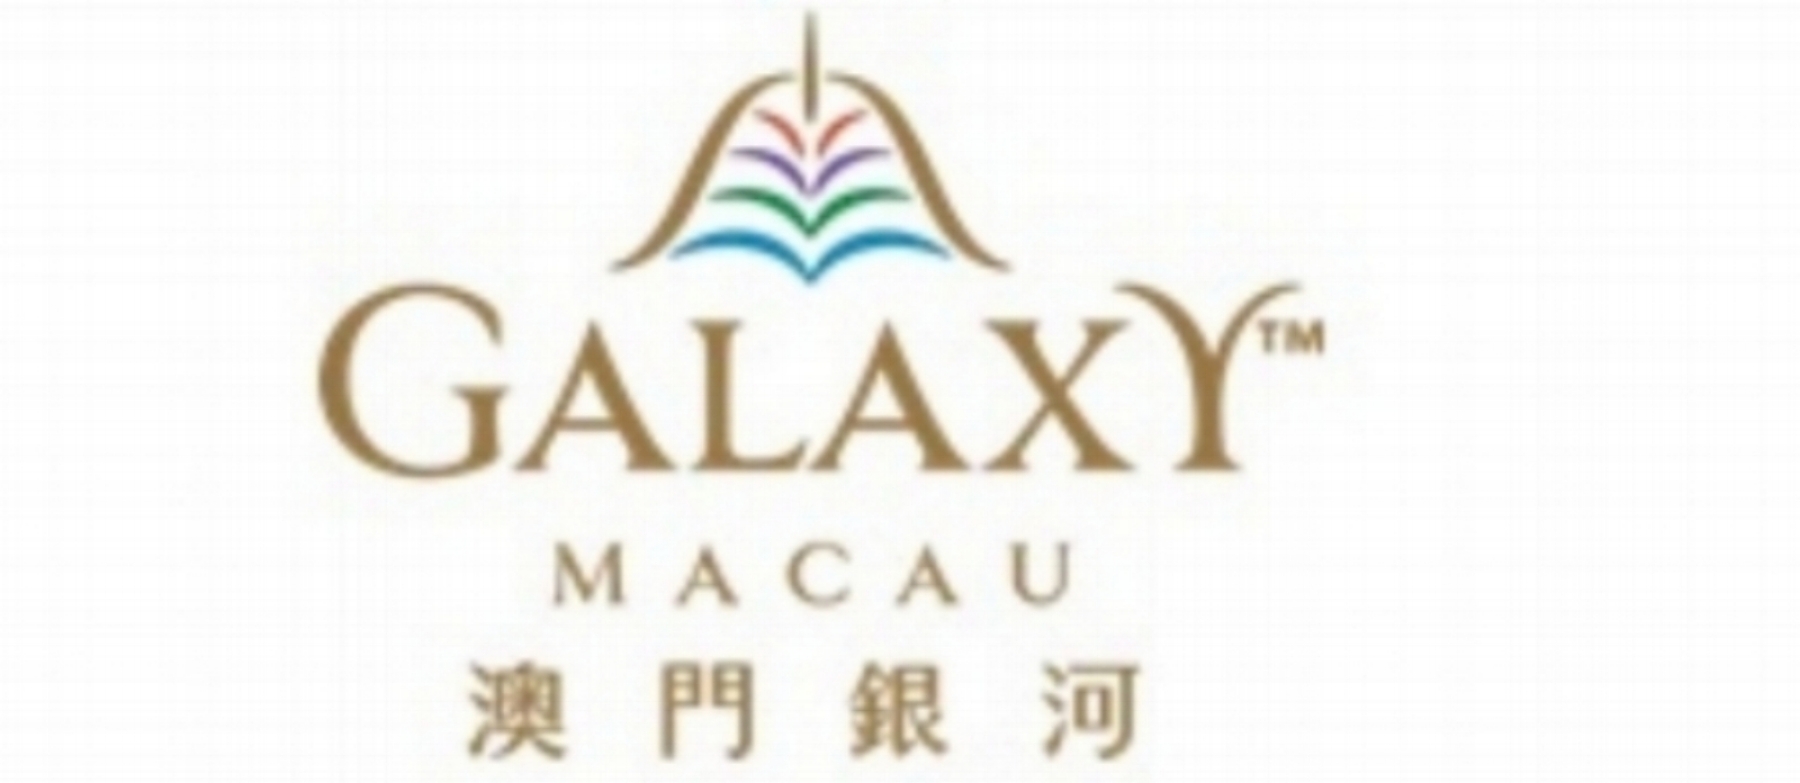 galaxy_macau_logo.jpg